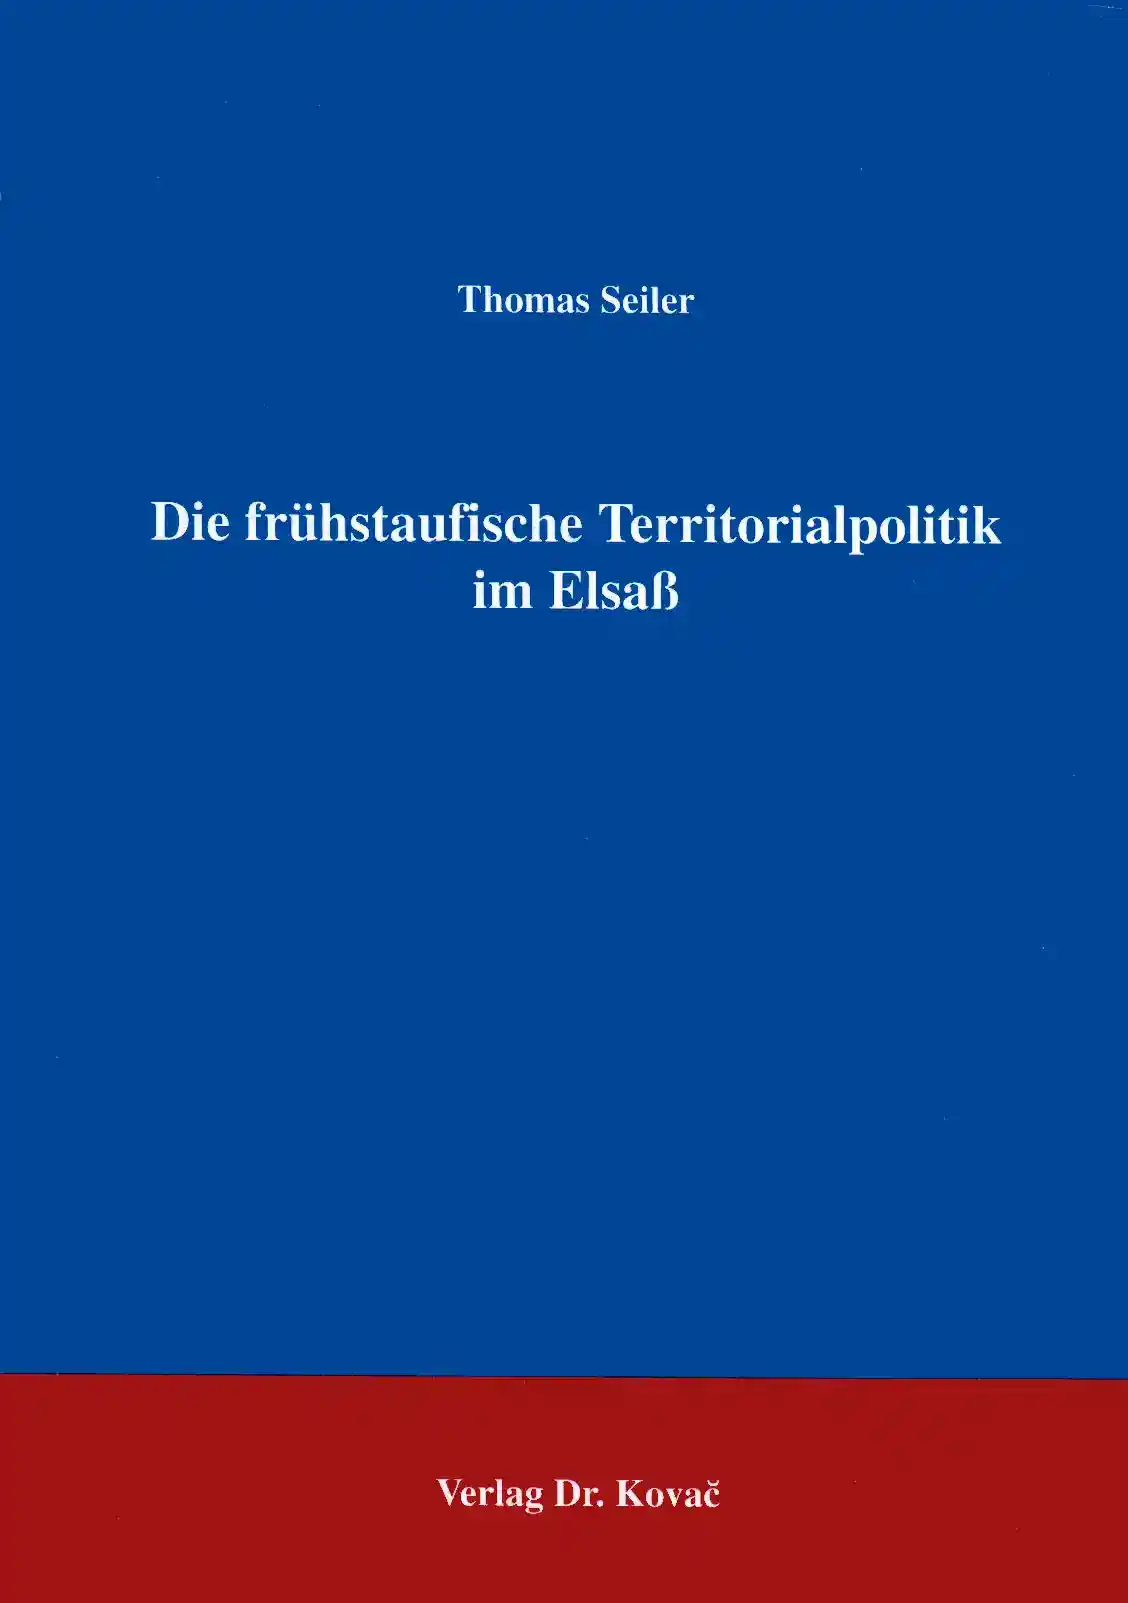 Die frühstaufische Territorialpolitik im Elsaß (Forschungsarbeit)